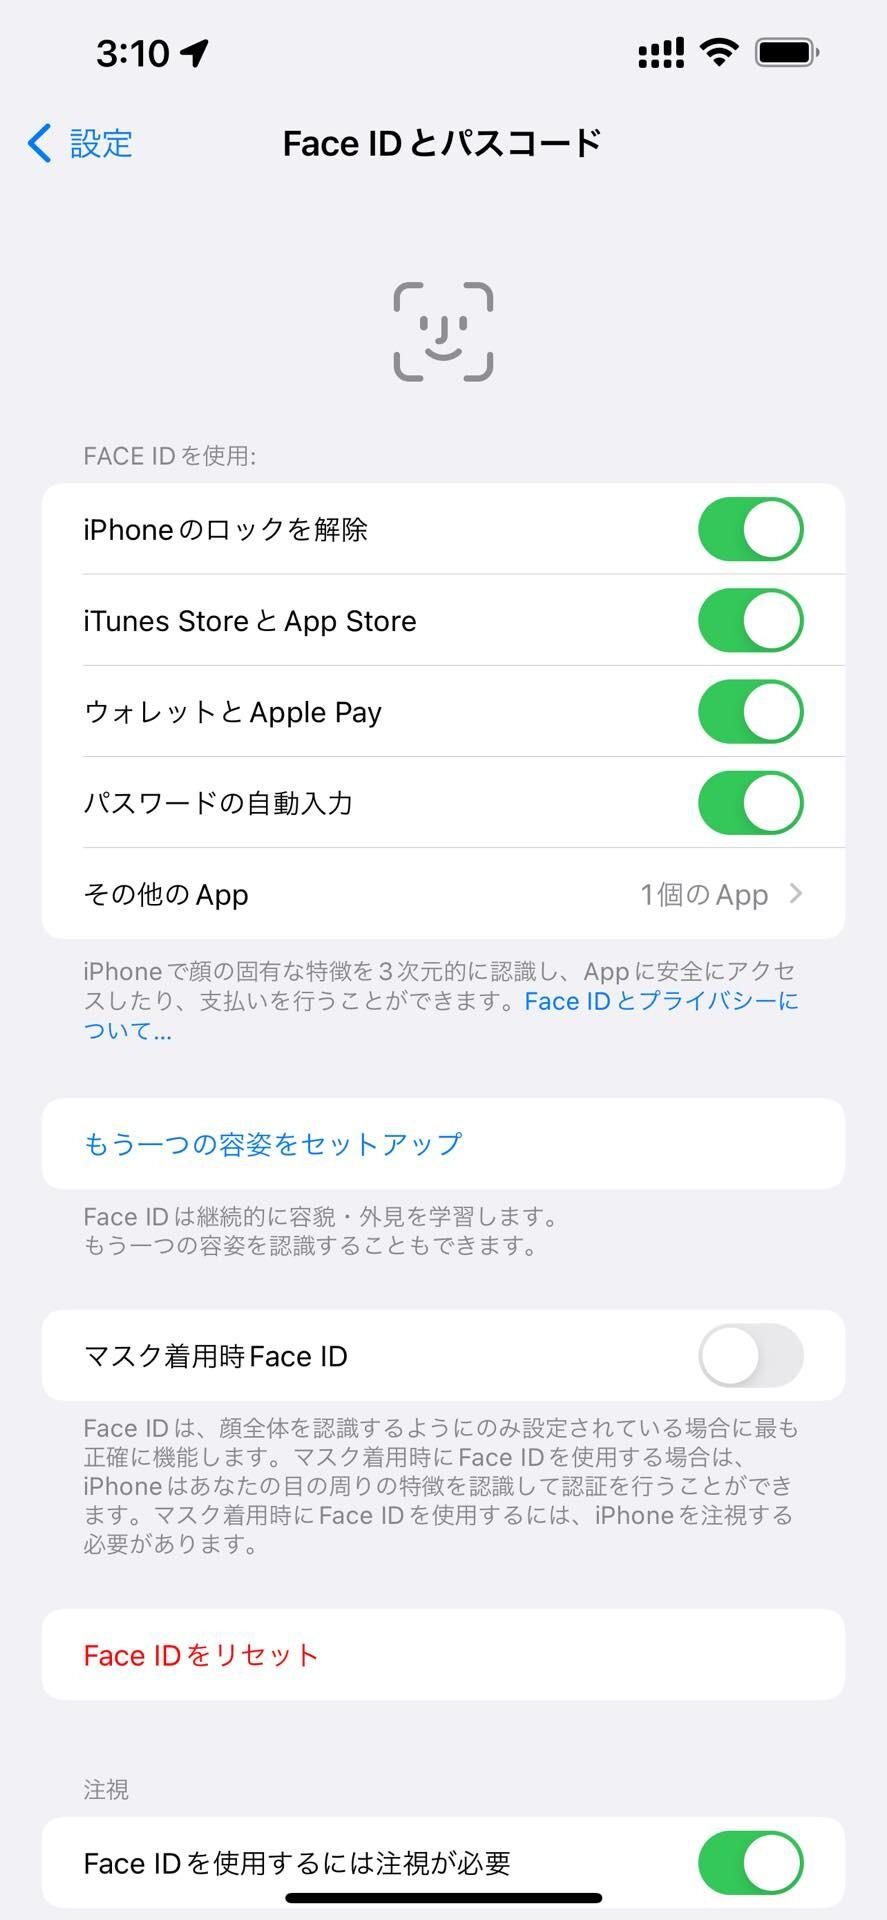 AppleがiPhoneやiPadなど向け最新プラットフォーム「iOS 15.4」や「iPadOS 15.4」を提供開始！マスク着用でも顔認証で解除可能に 